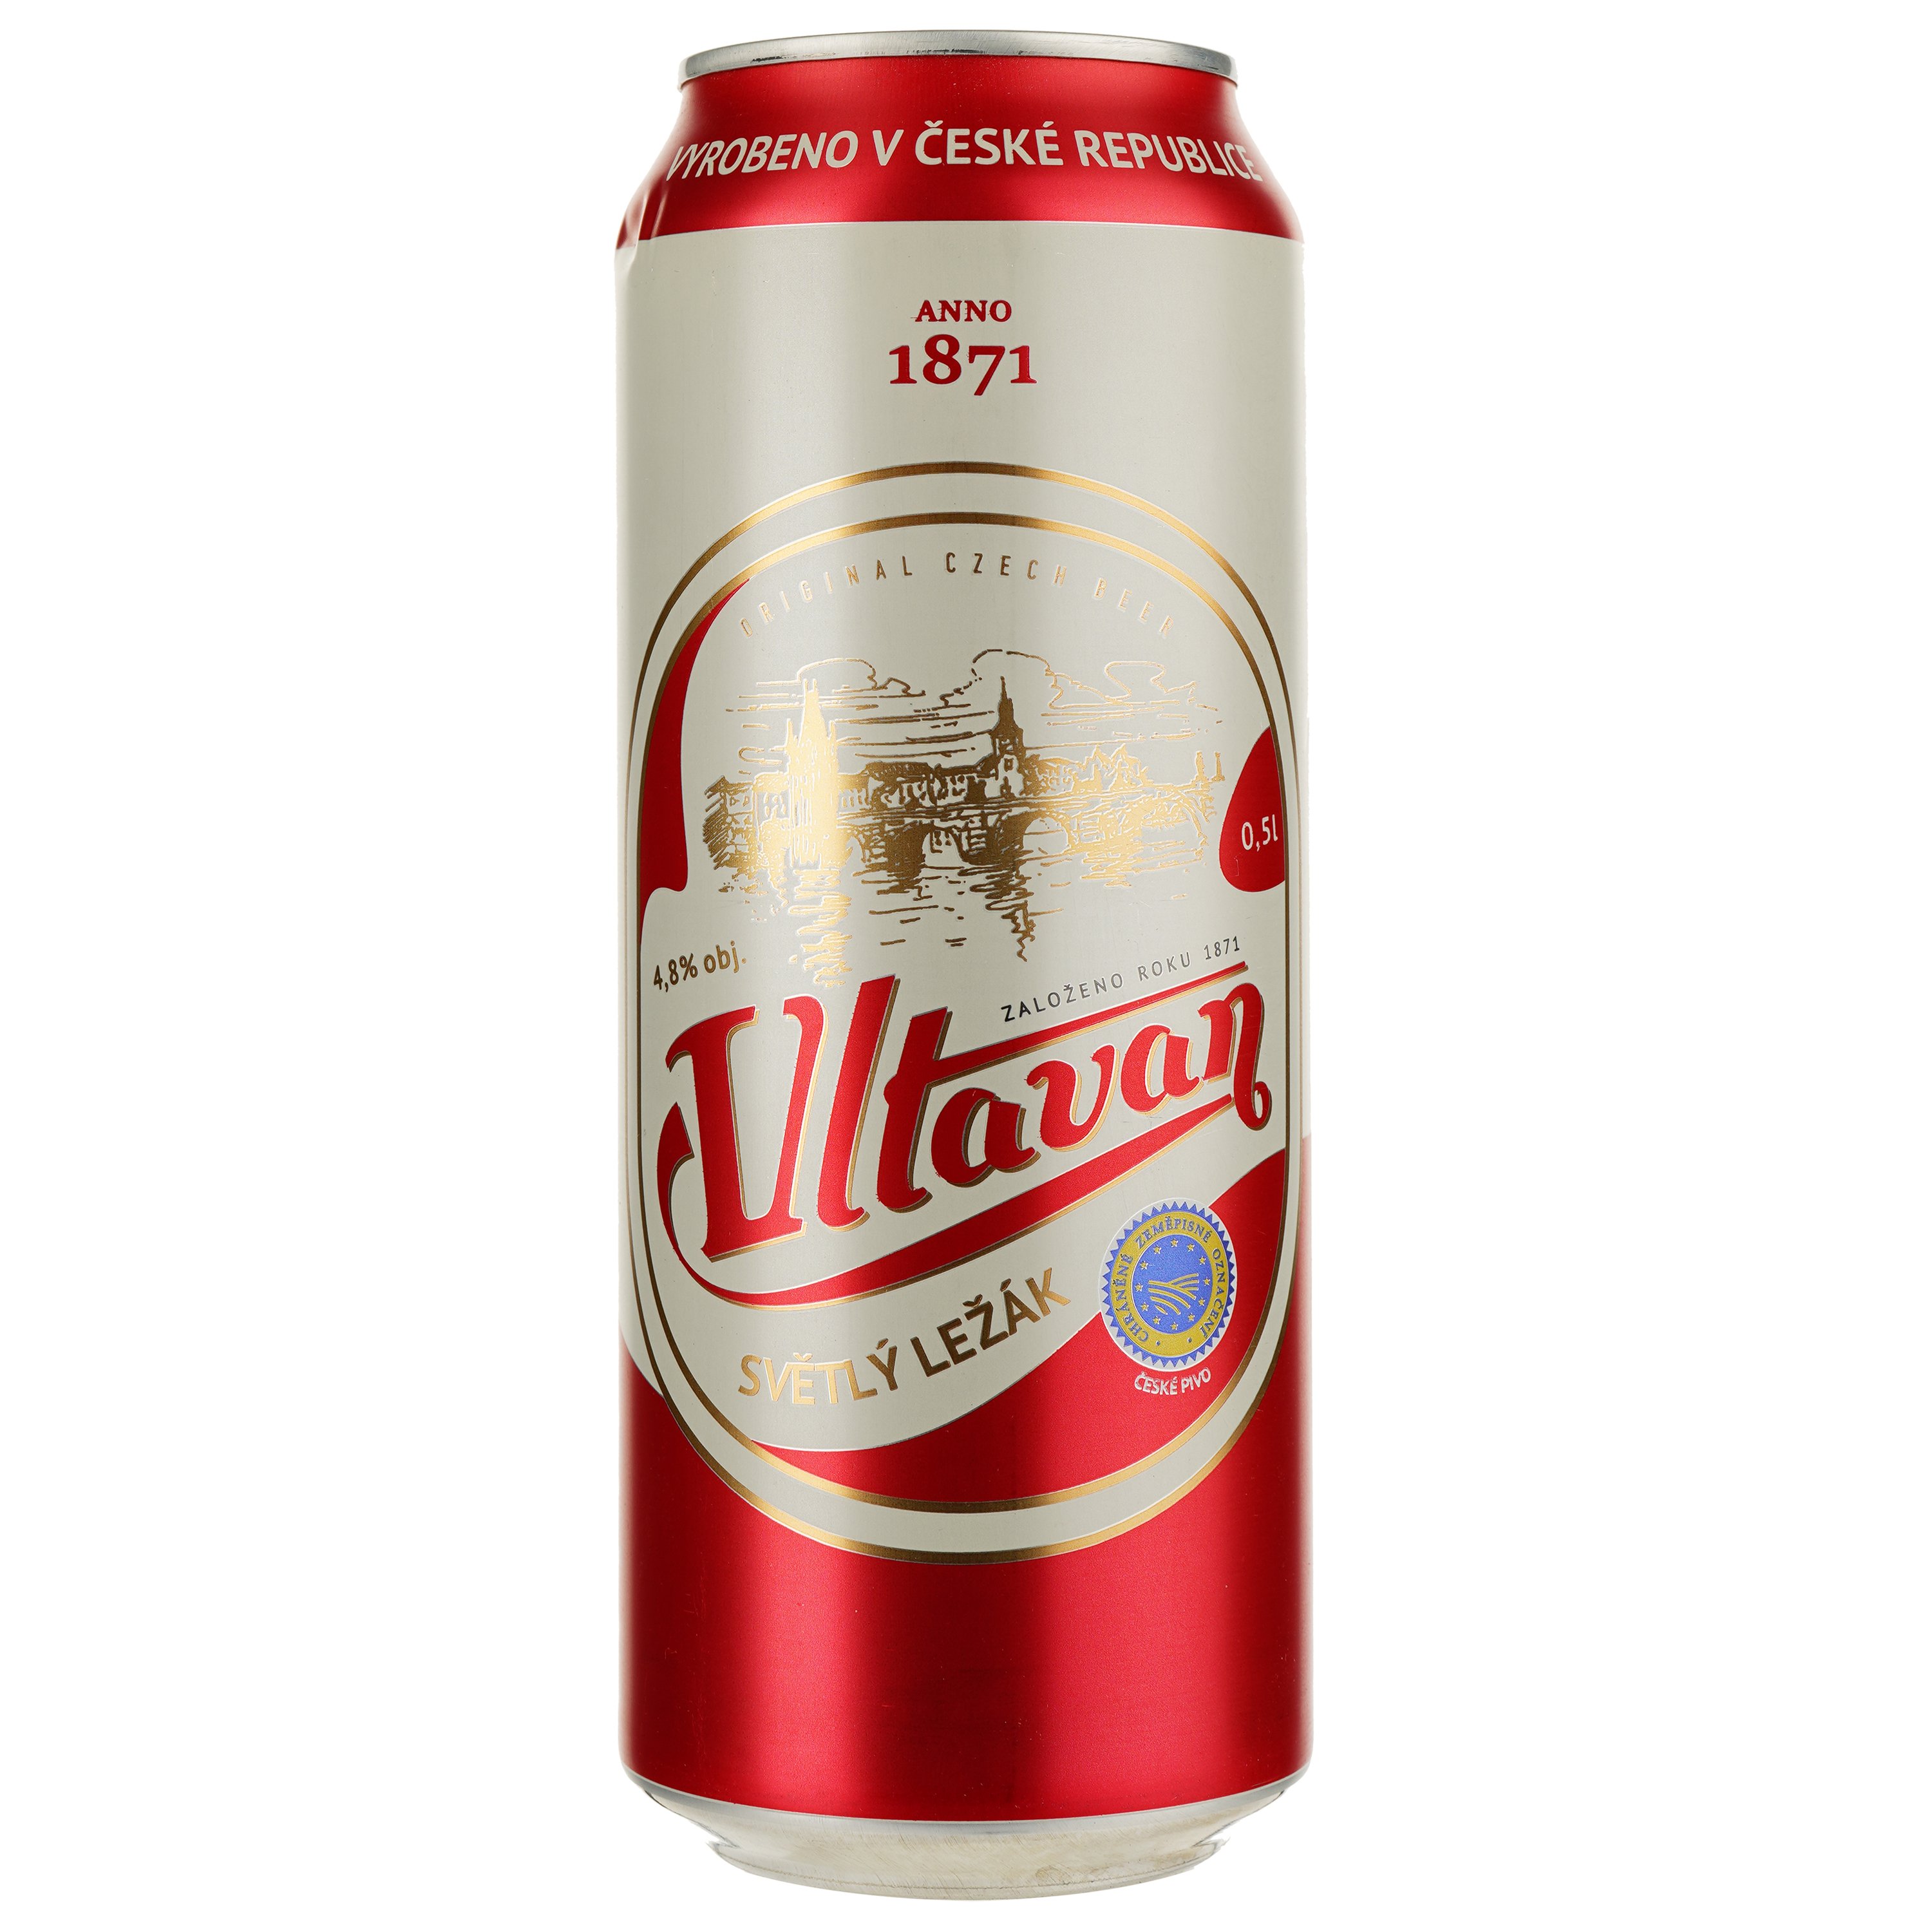 Пиво Vltavan Svetly Lezak светлое 4.8% 0.5 ж/б - фото 1